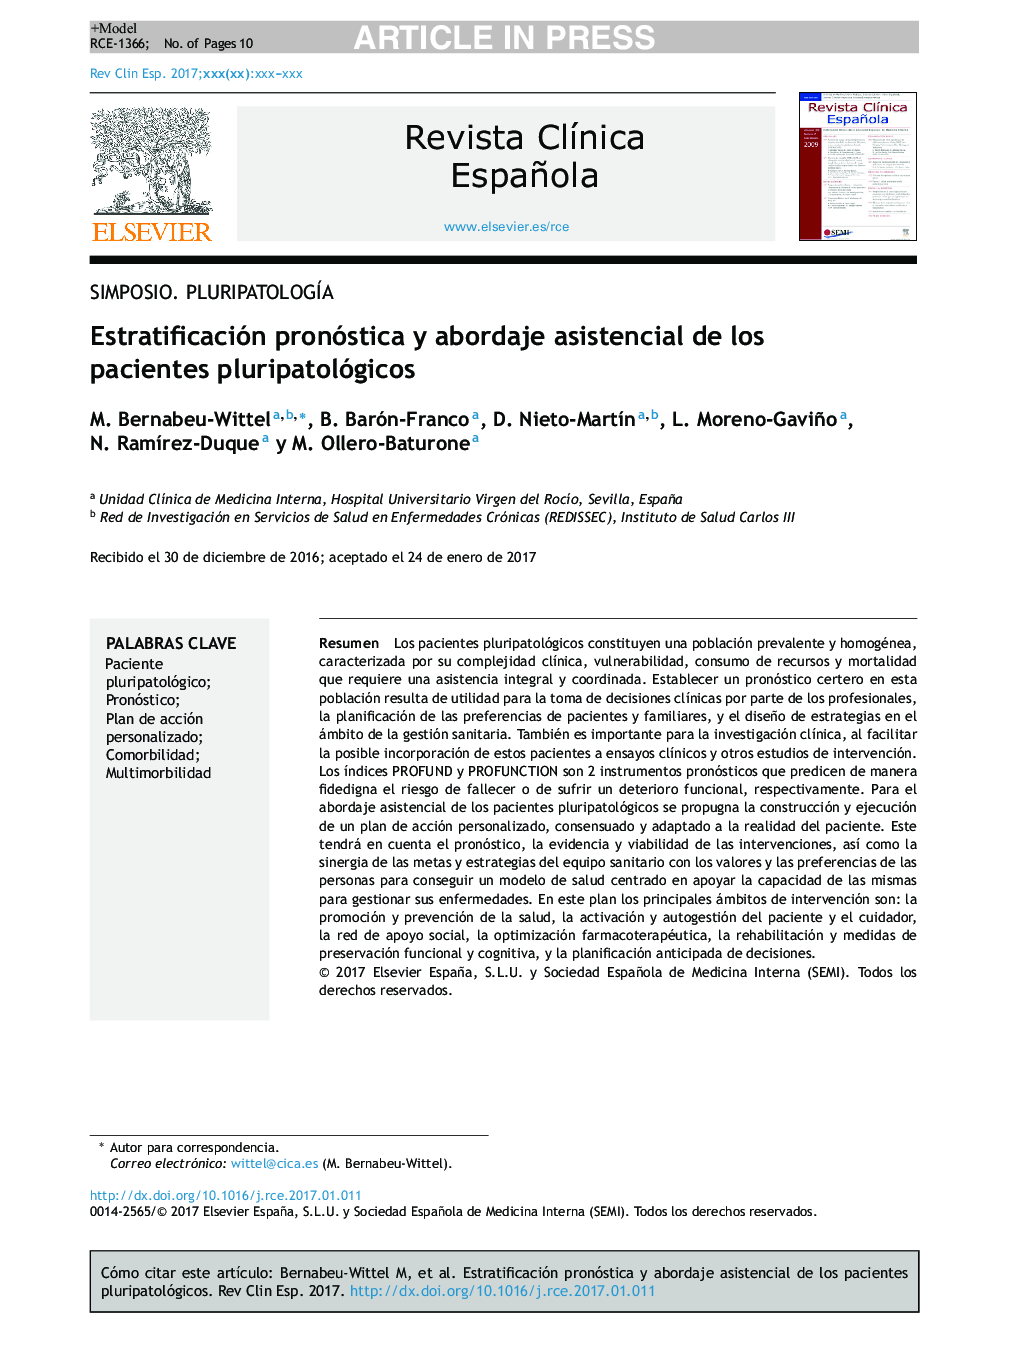 Estratificación pronóstica y abordaje asistencial de los pacientes pluripatológicos